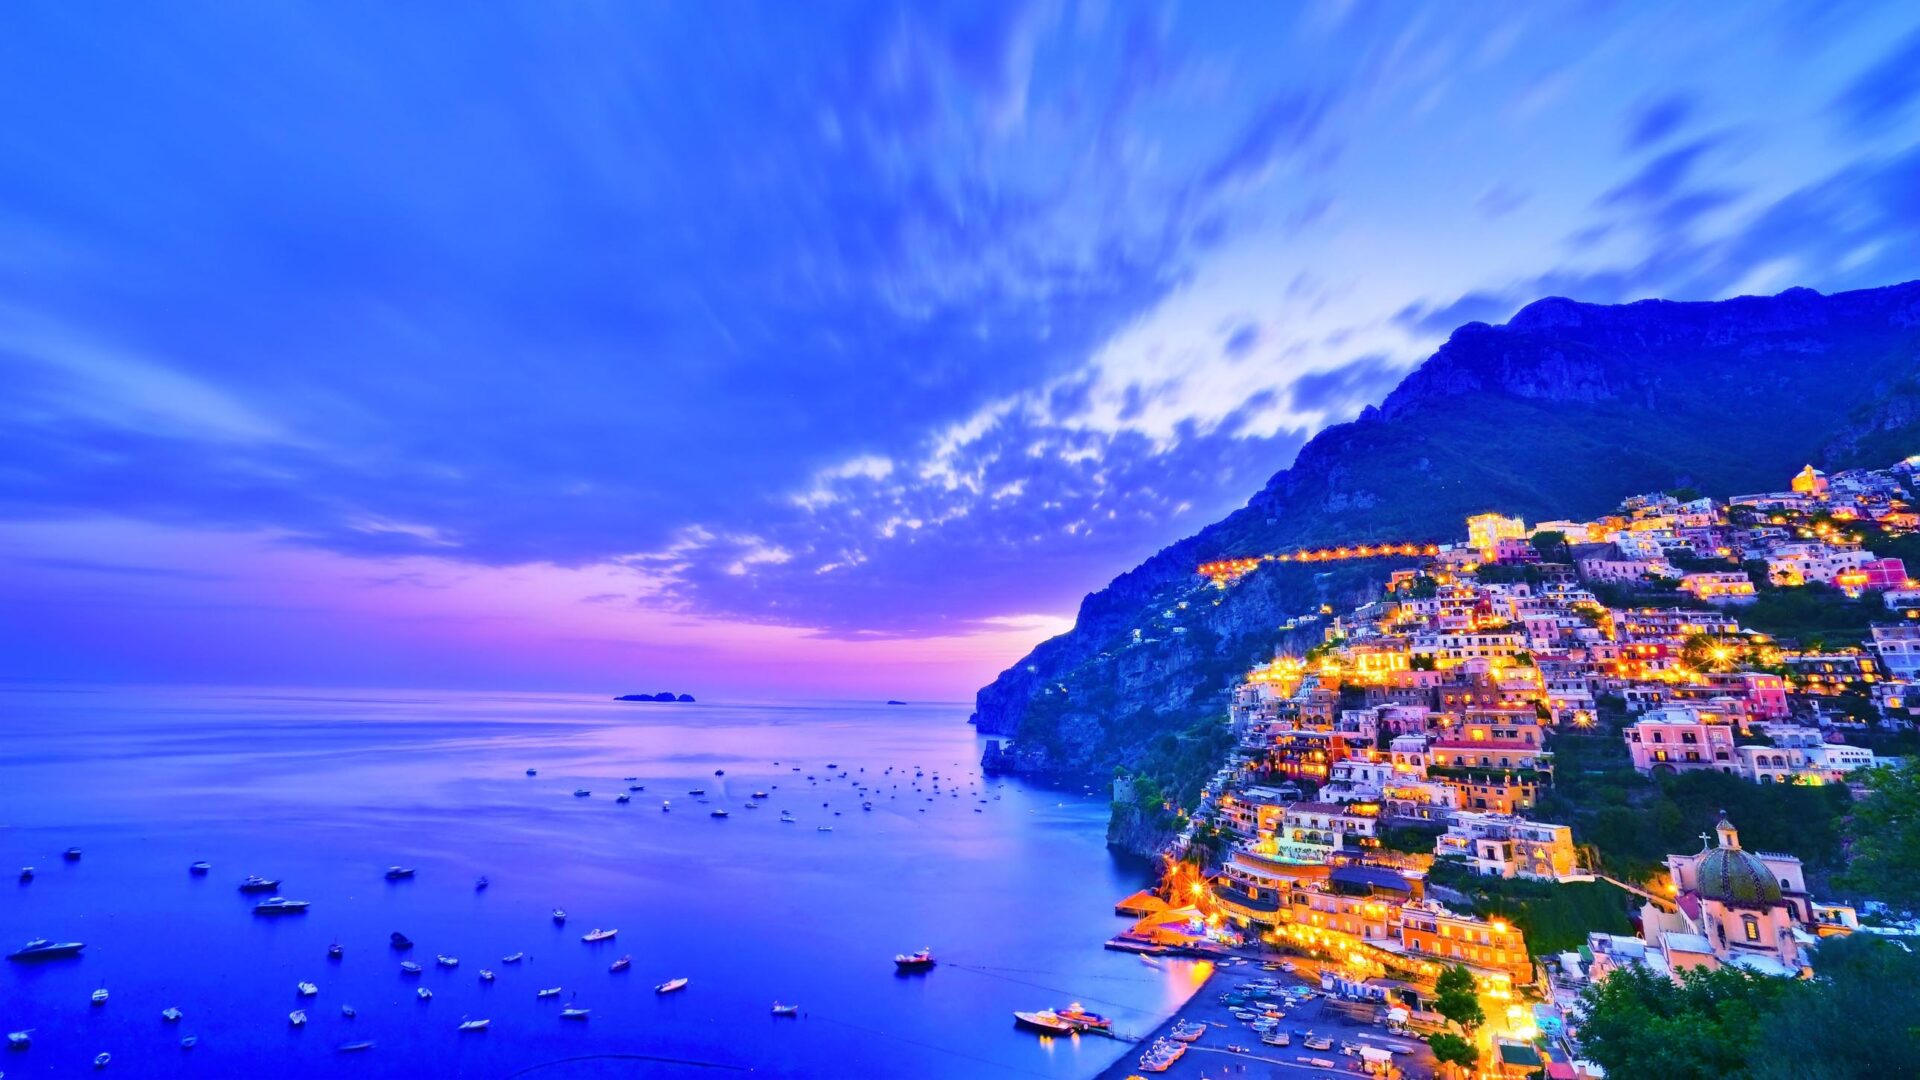 A sunset on the coast of Amalfi.